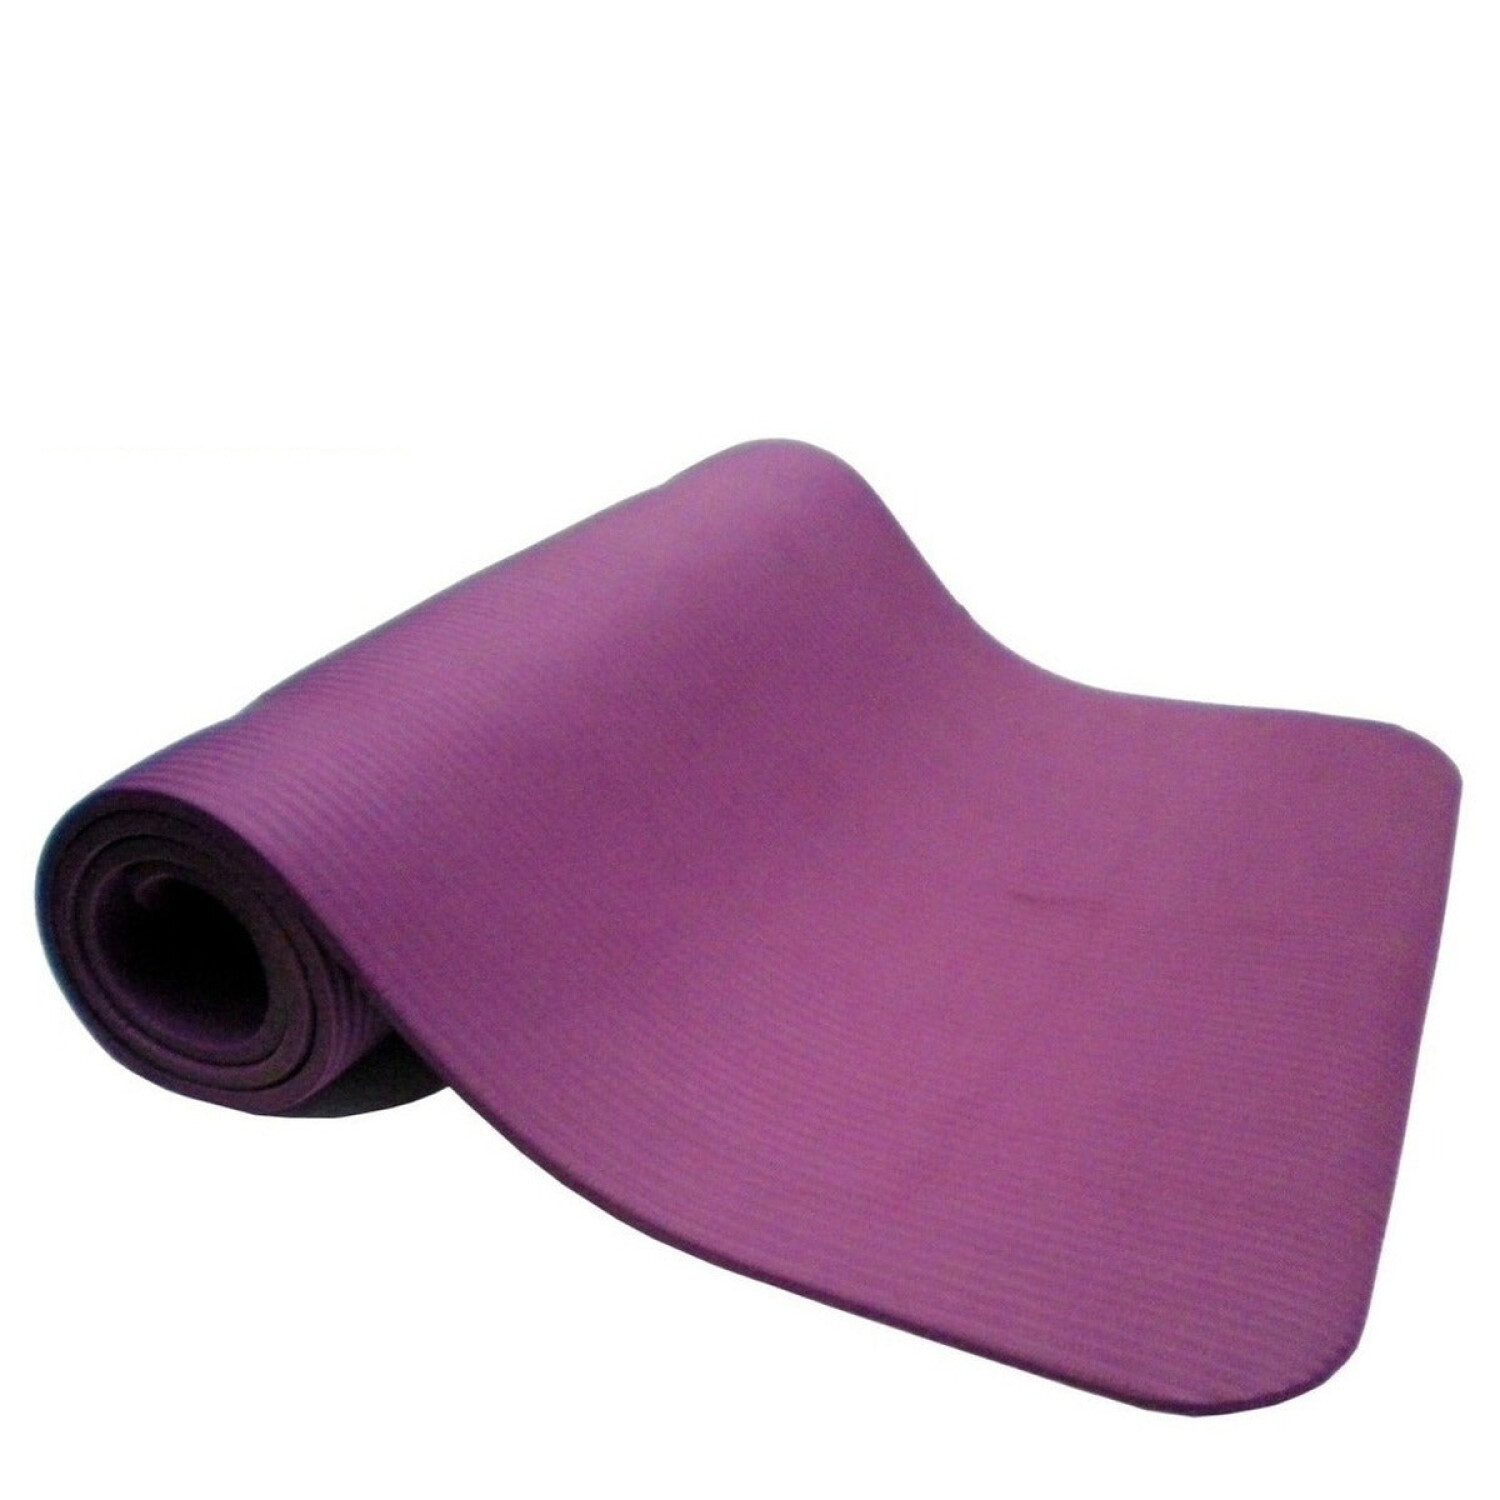 GENERICO Manta de Yoga 8mm Mat Yoga Pilates